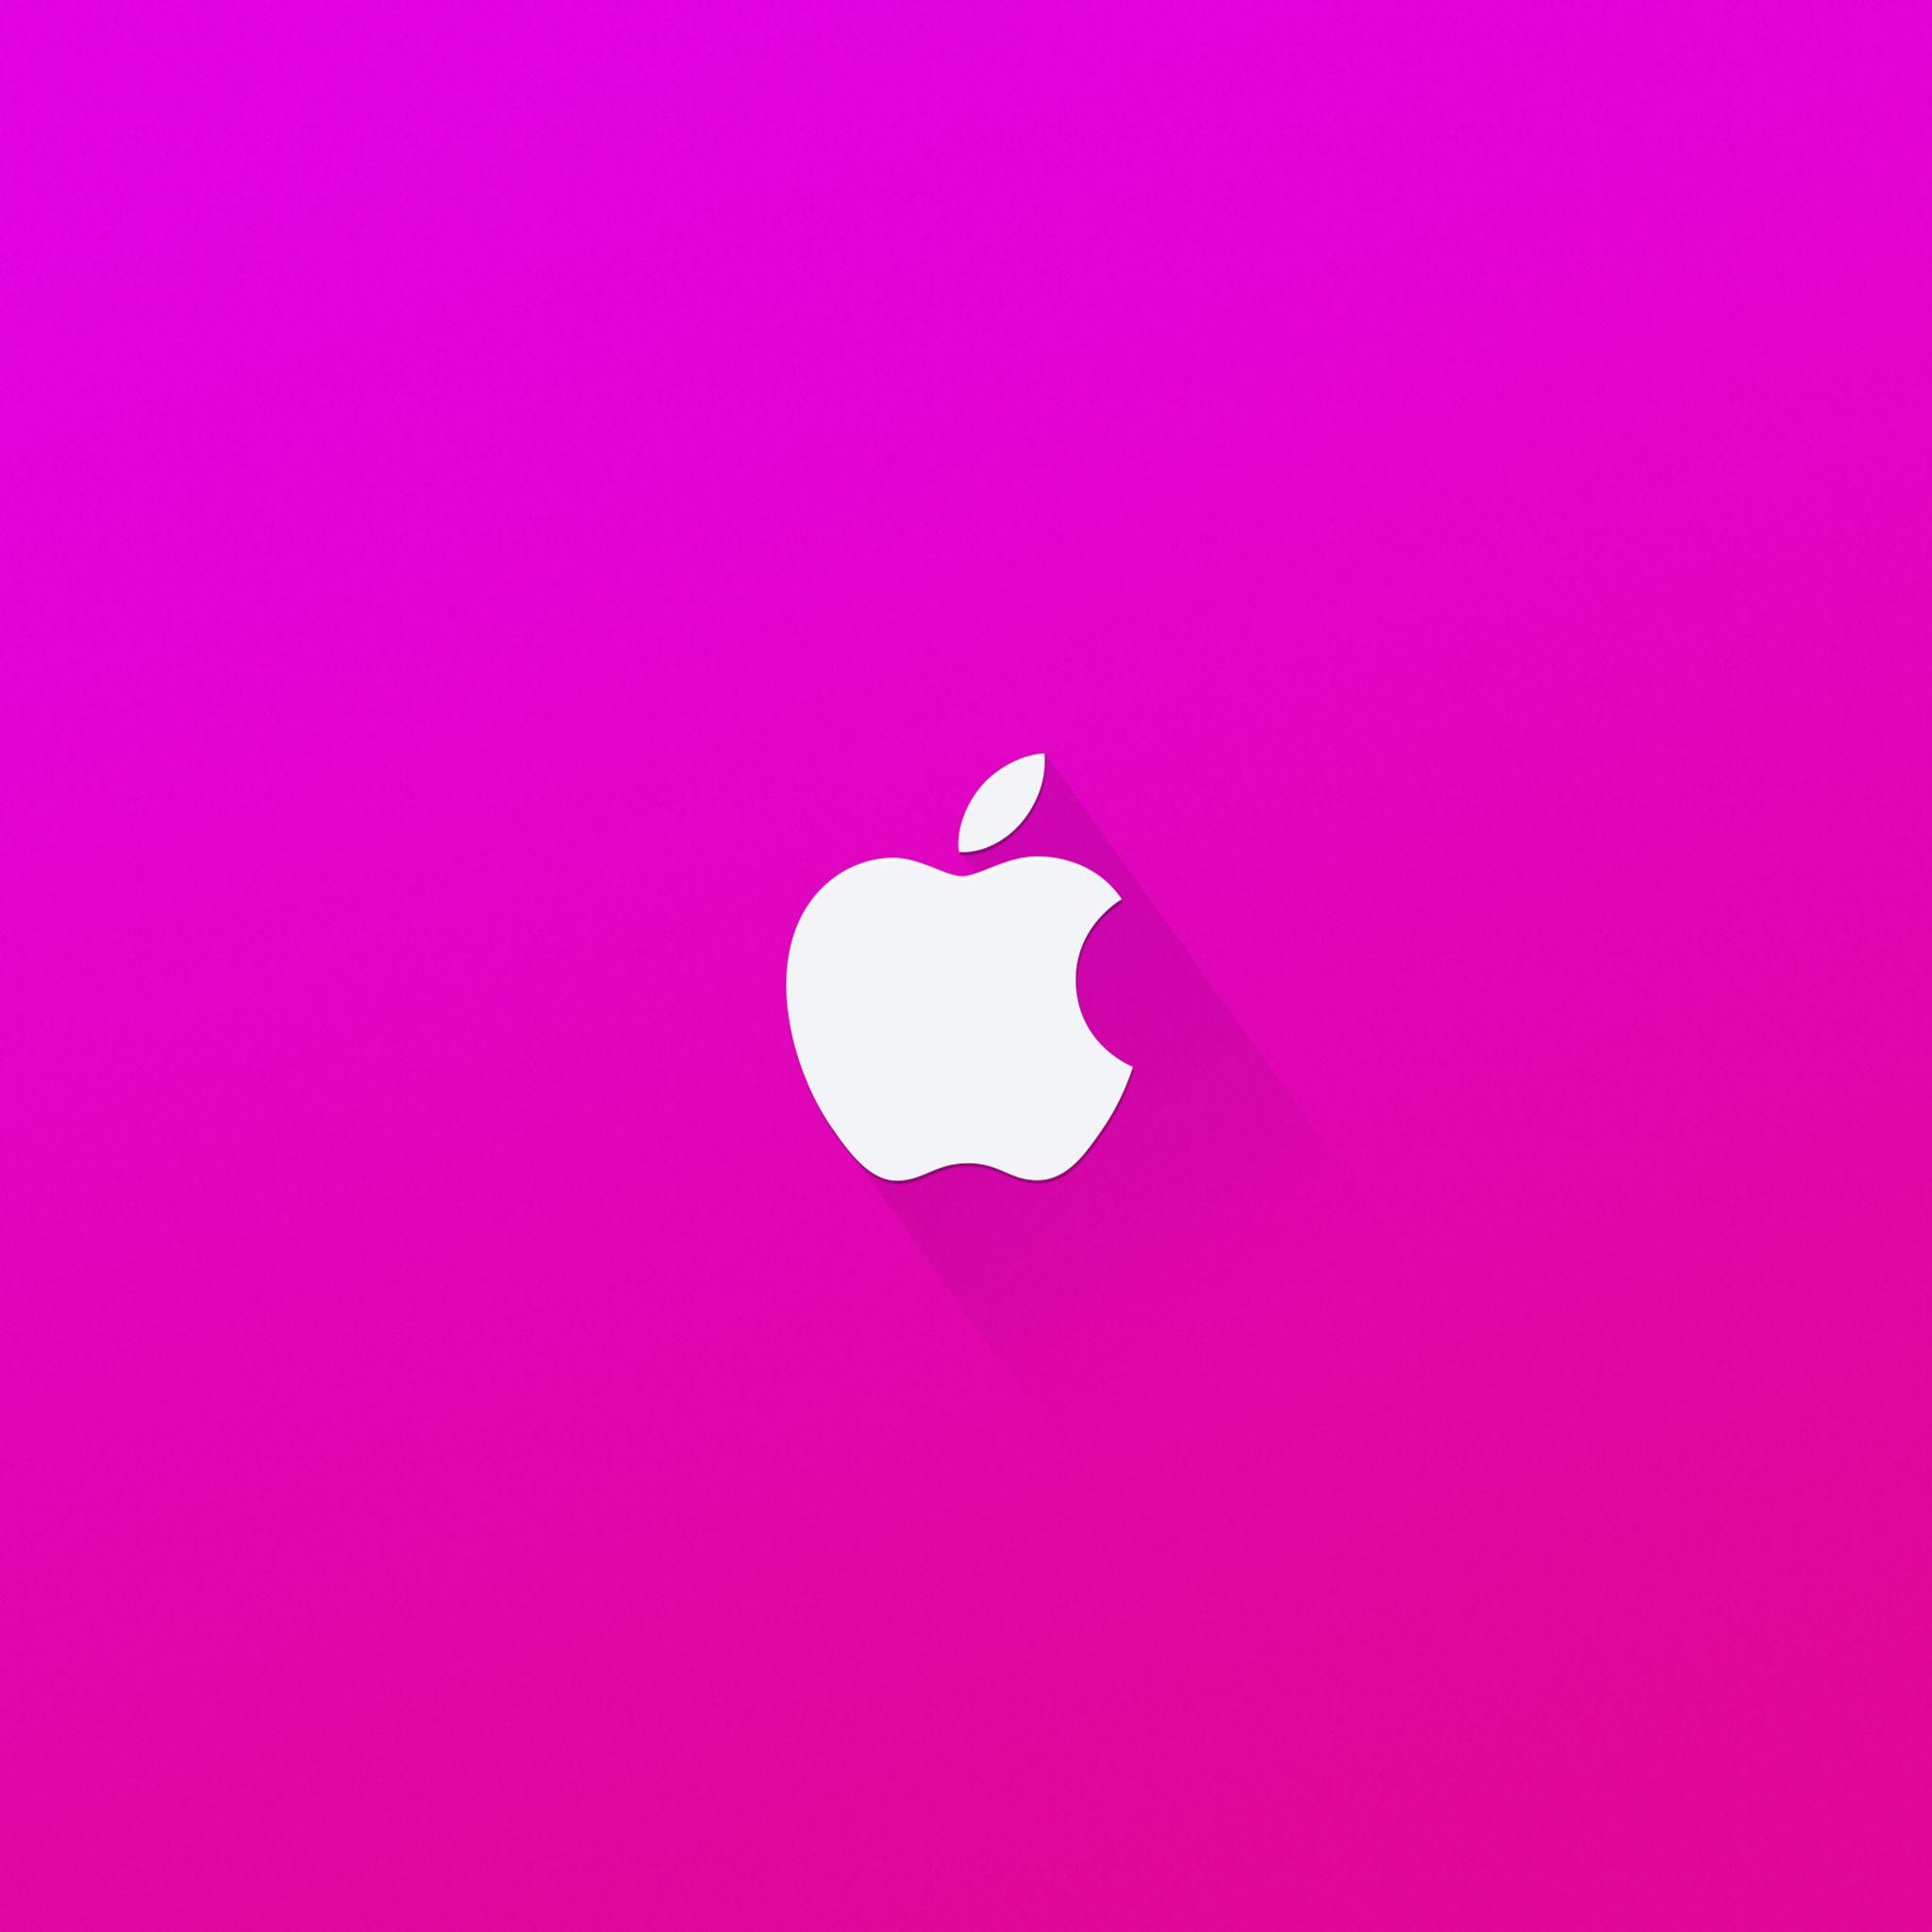 Pink Apple Logo - Download Apple Logo Pink 2048 x 2048 Wallpaper